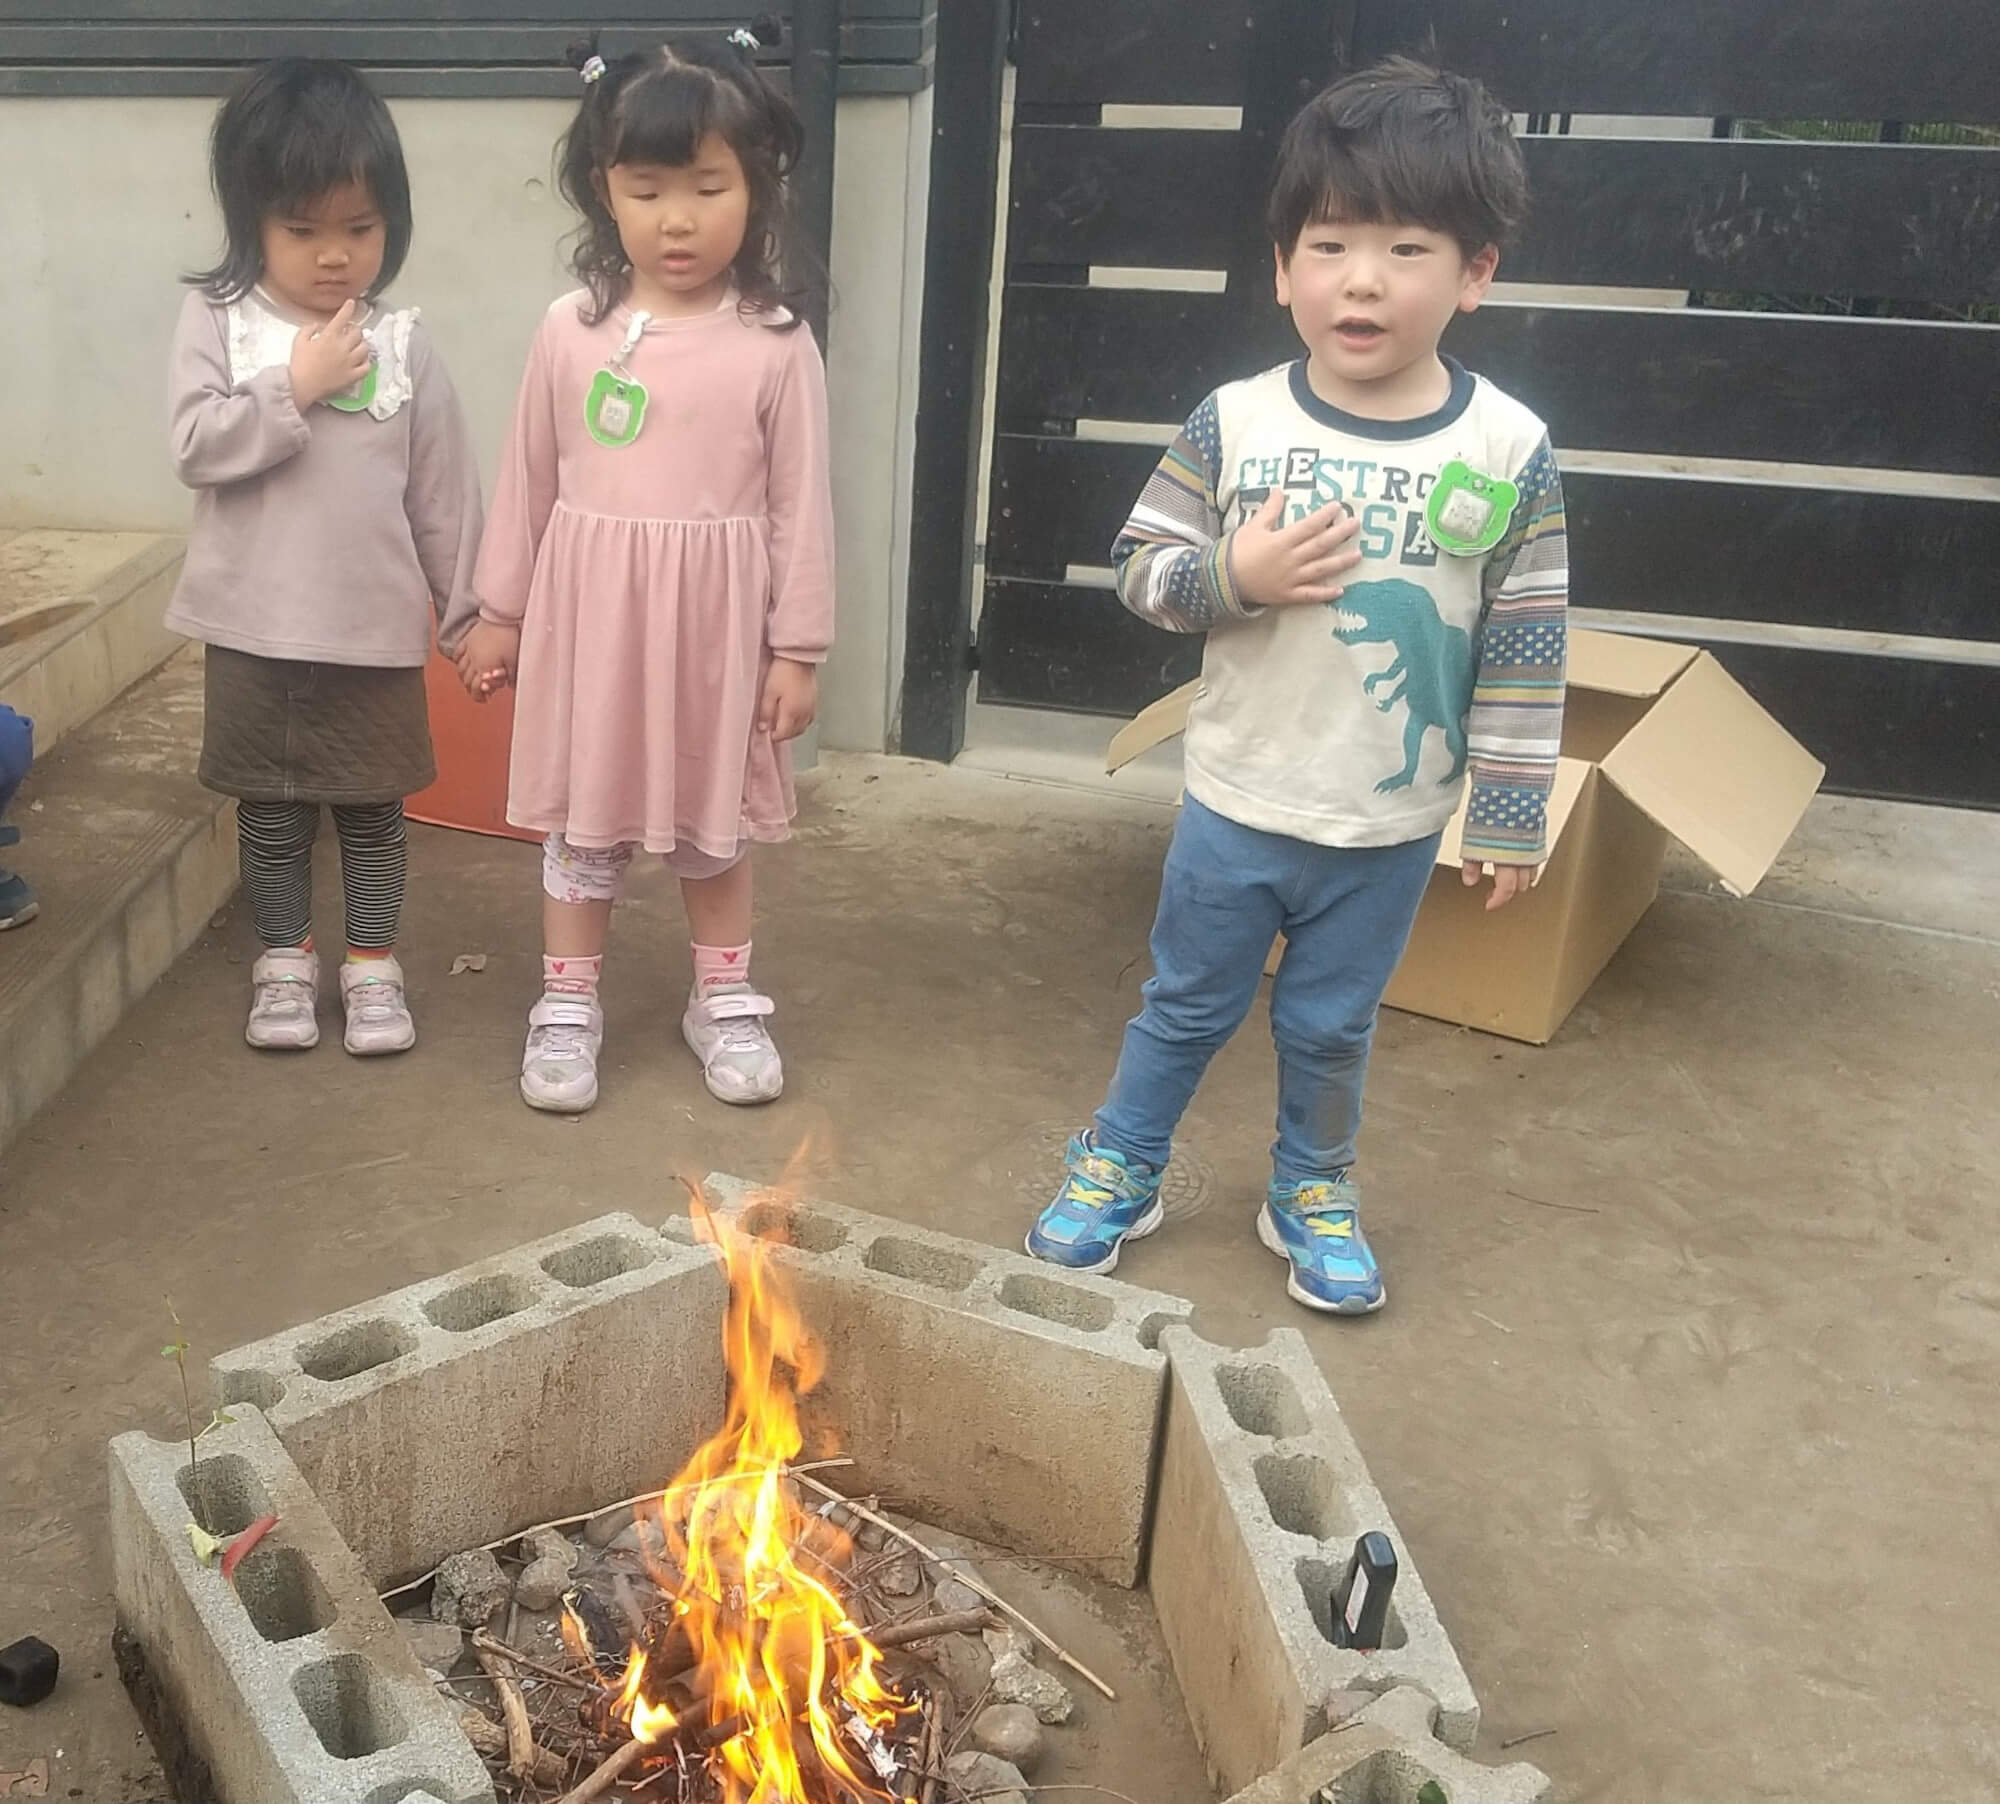 火を観察する子どもたち